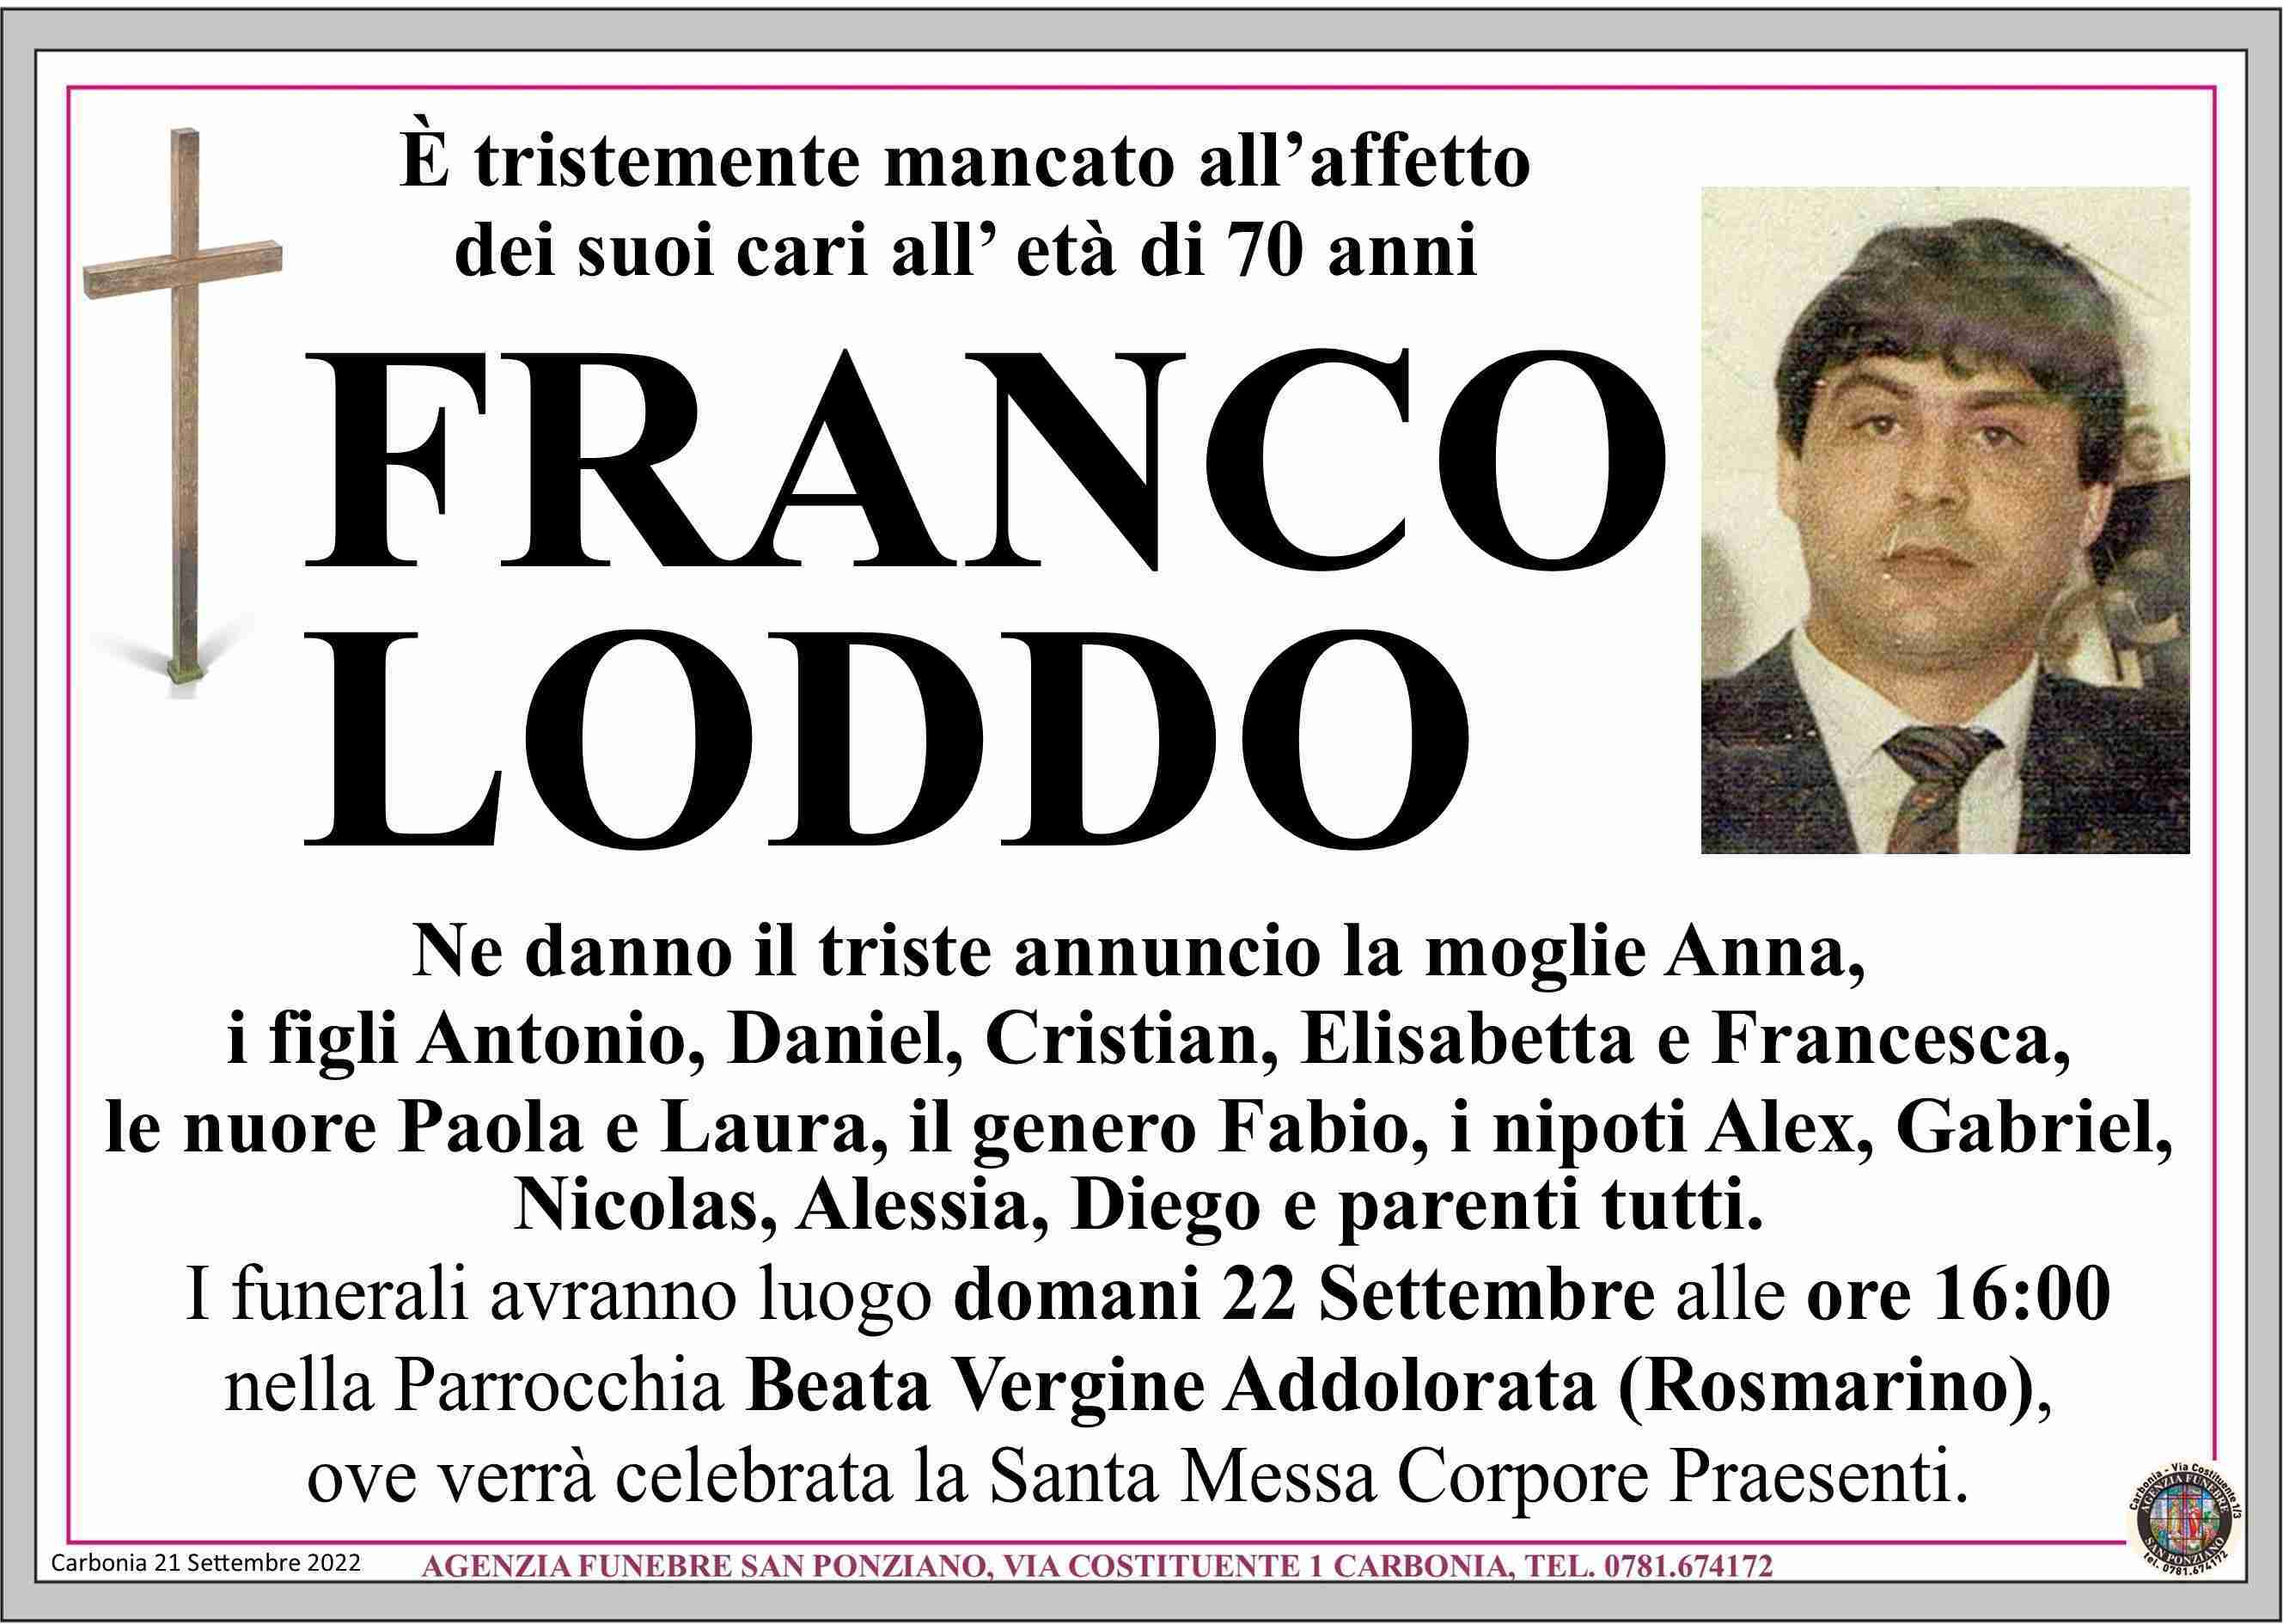 Franco Loddo